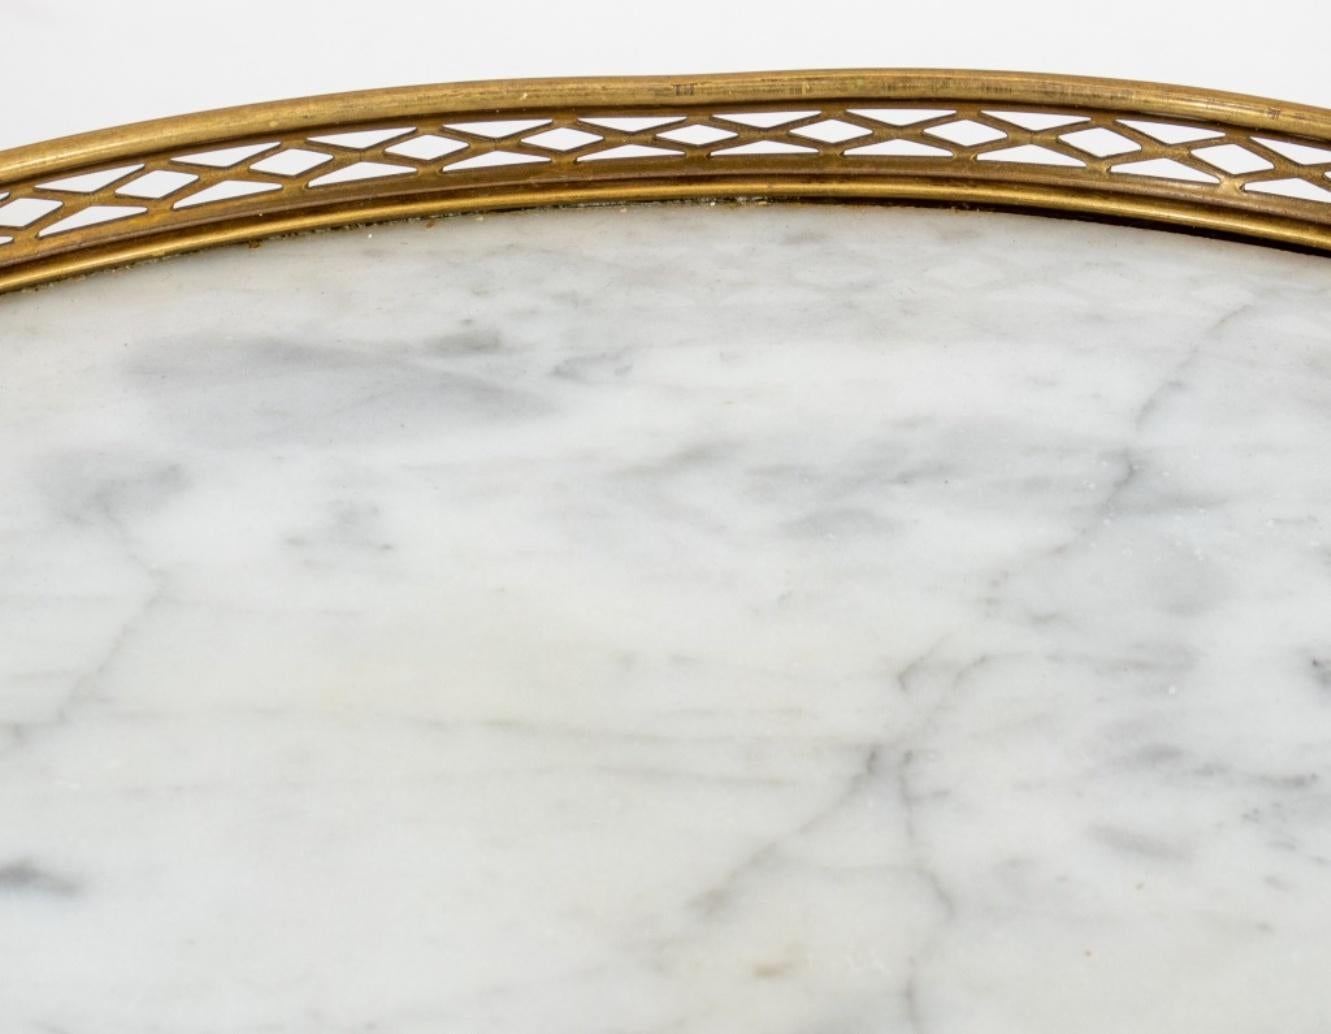 Table d'appoint Bouillotte en noyer de style Louis XV, reposant sur des pieds fuselés et cannelés, avec un plateau ovale en marbre rehaussé d'une galerie en métal doré.

Dimensions : 18